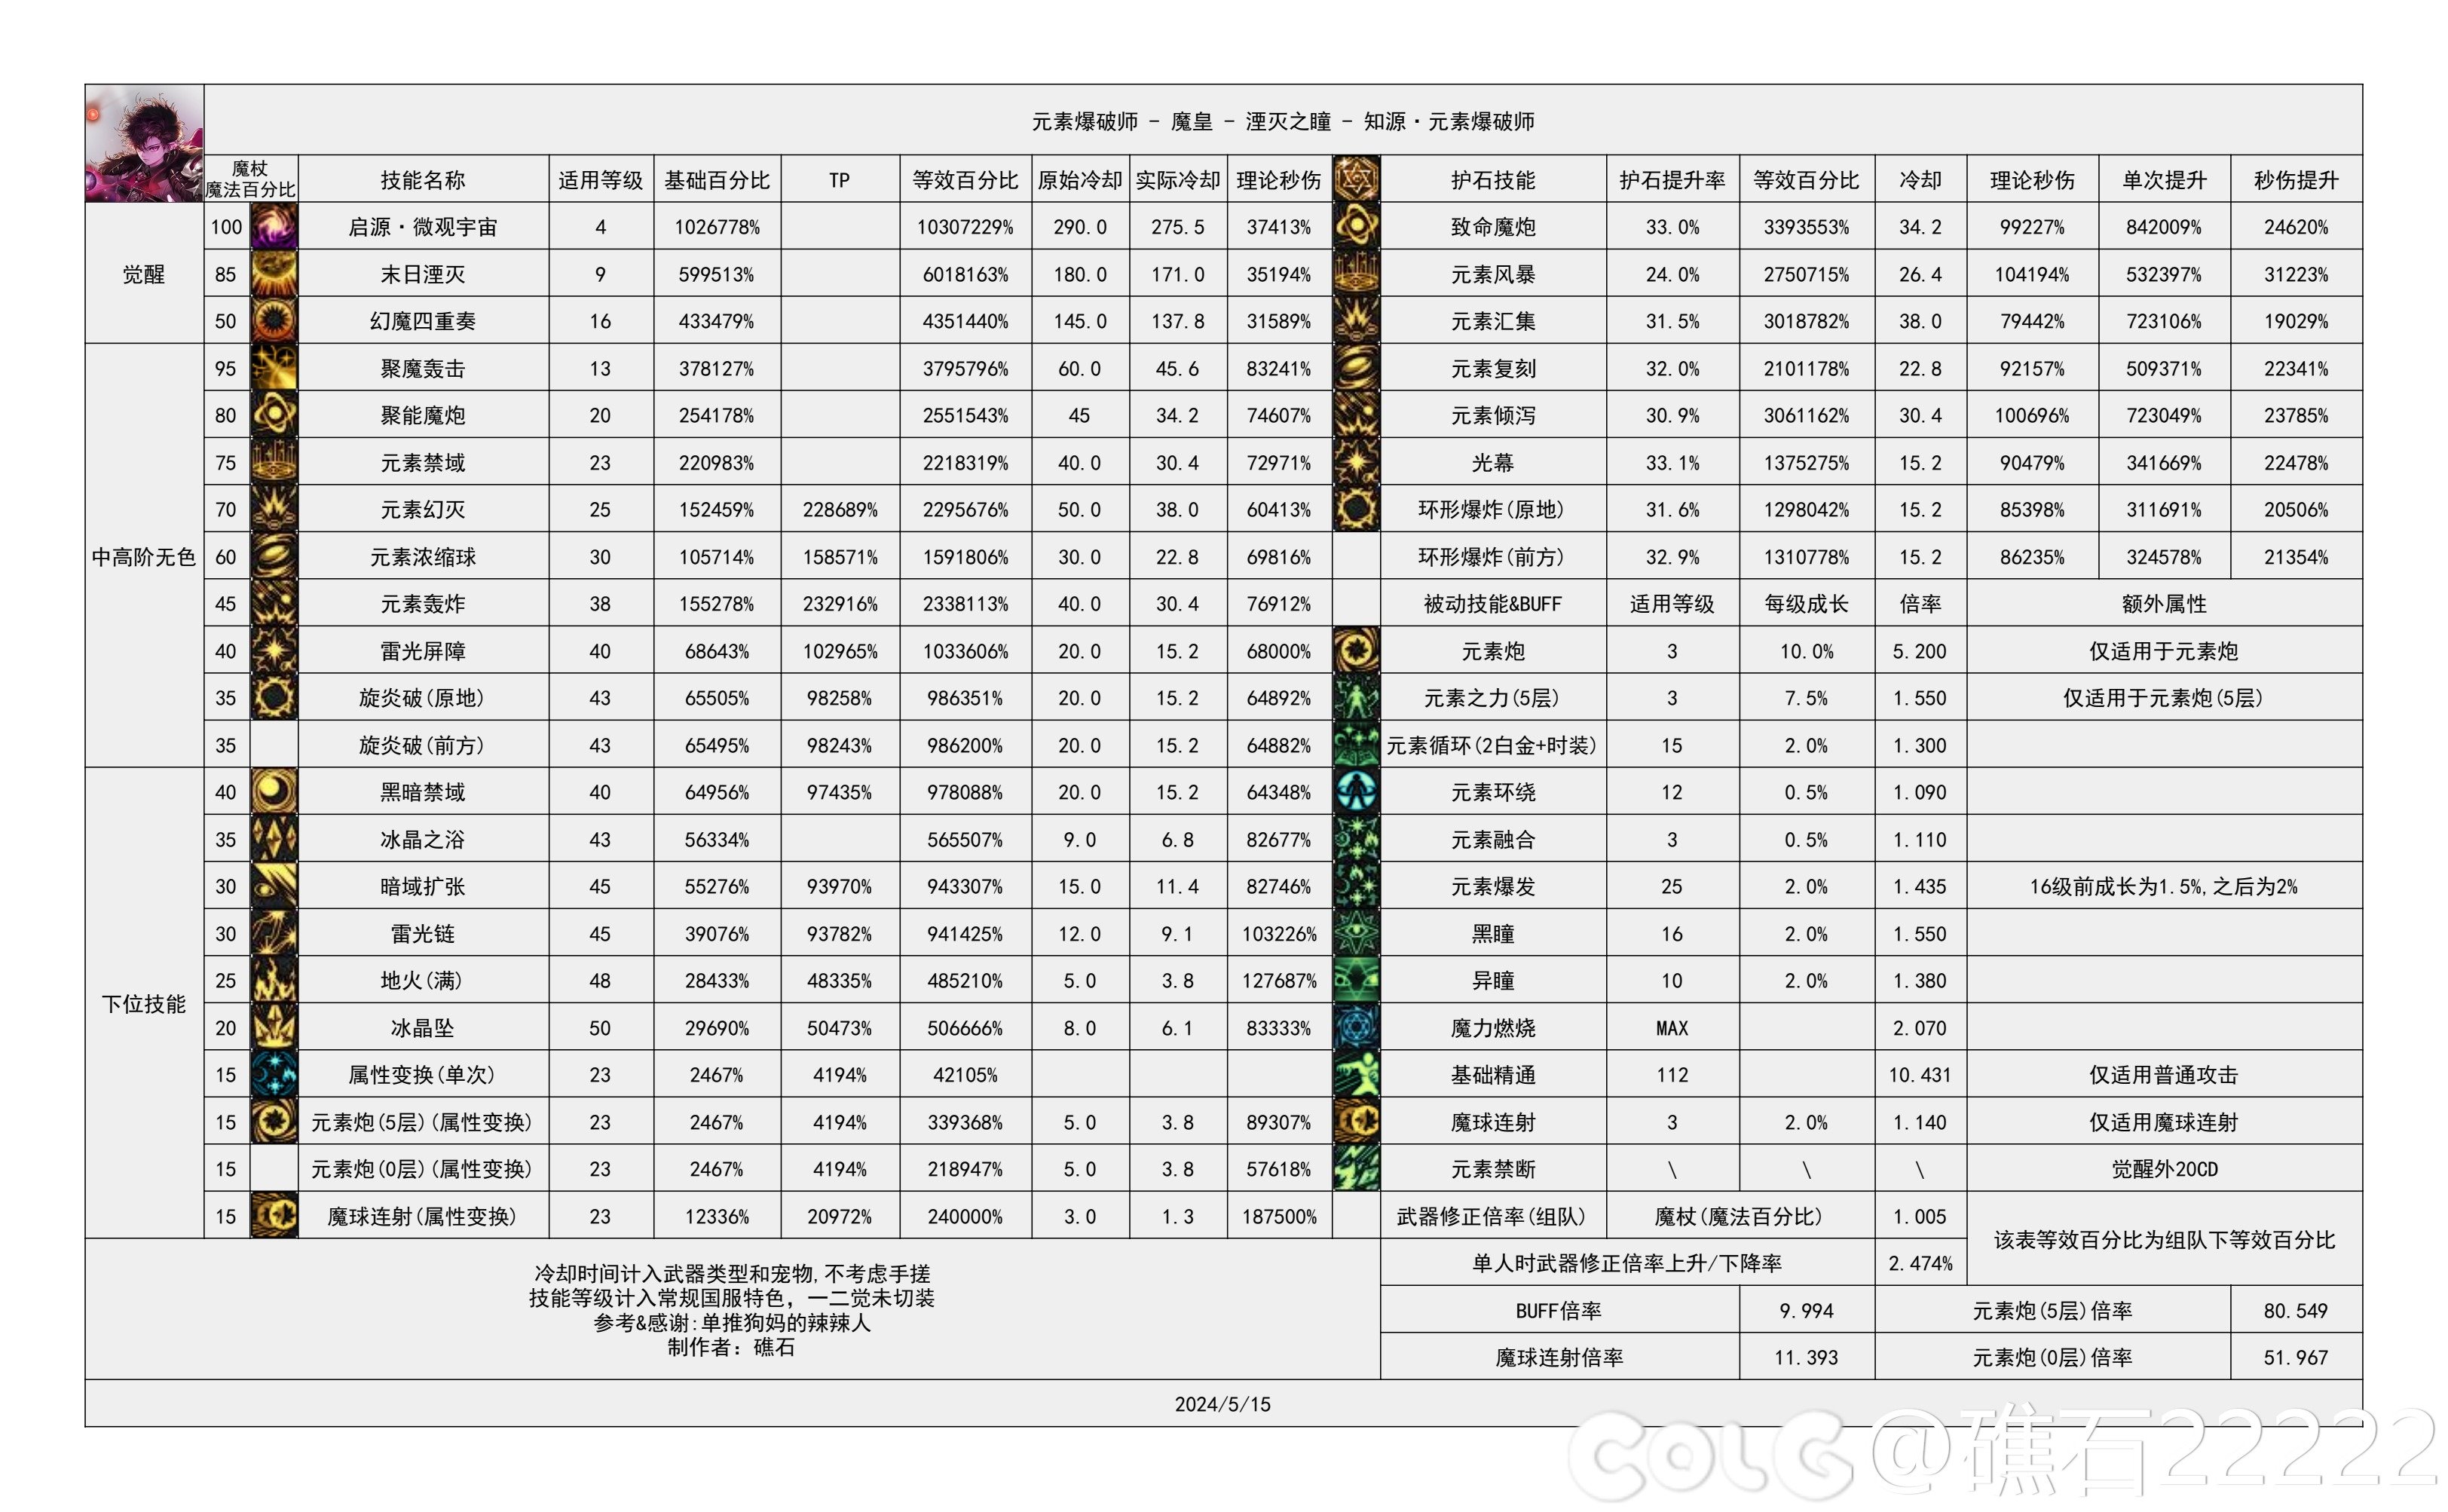 【国服现状】110版本输出职业数据表(国正5.15)(最新)39